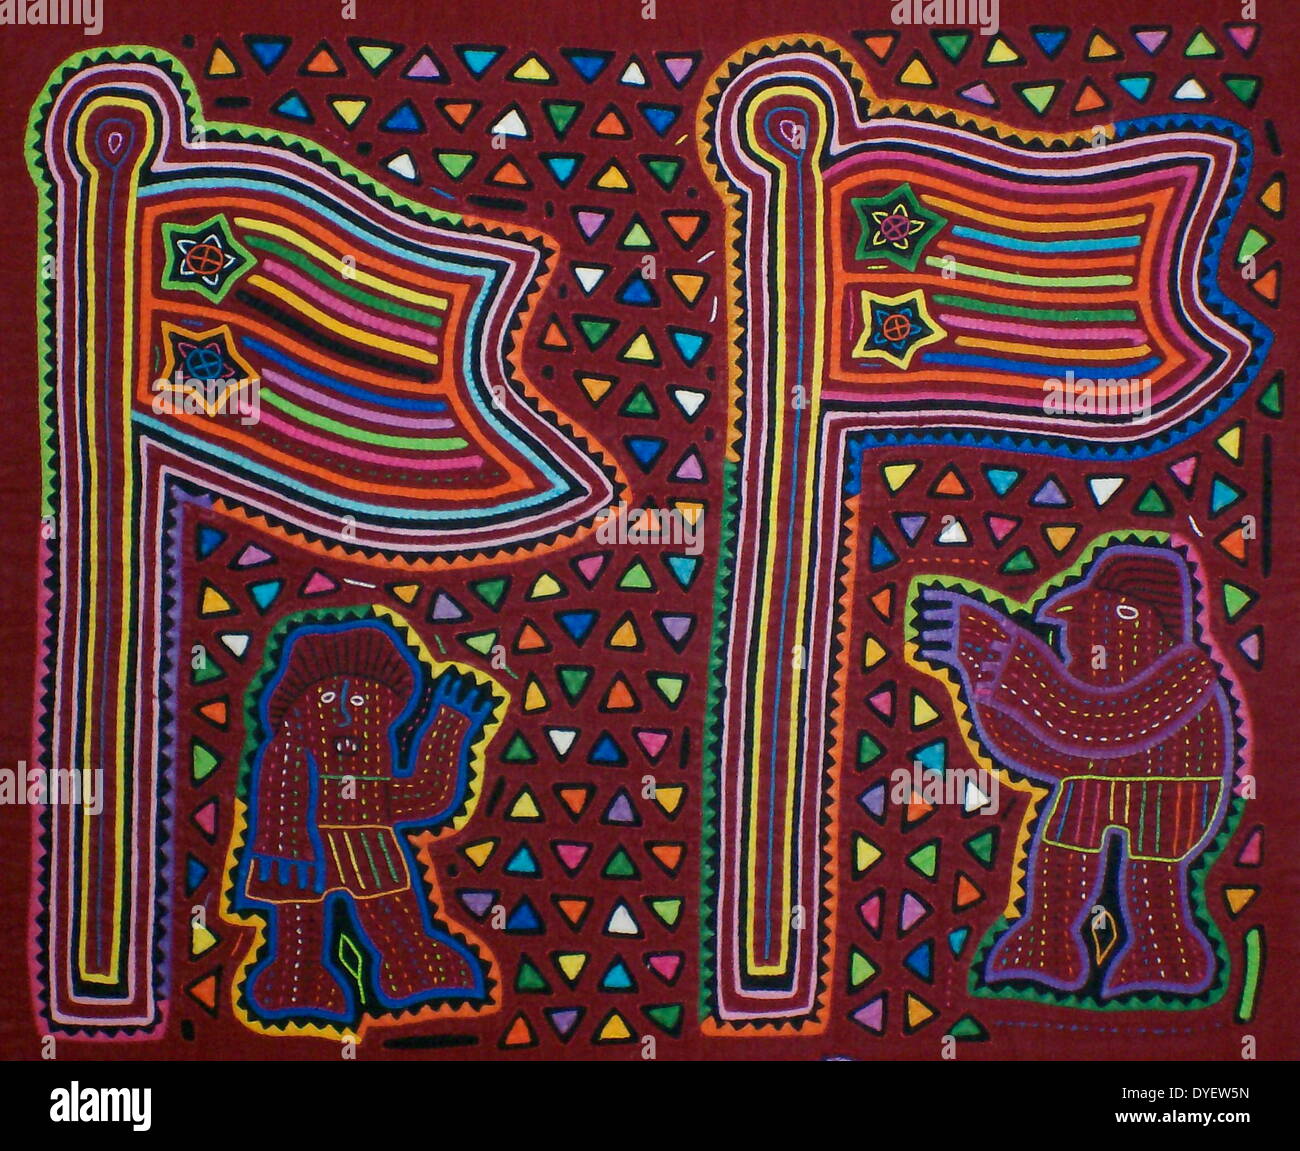 Mola da tessili Kuna artista indiano, raffigurante un moderno influenza sulla cultura Kuna. Dal San Blas arcipelago, Panama. Reverse applique design indossato sulla camicia femminile. Due astronauti piantare le bandiere sulla luna. Foto Stock